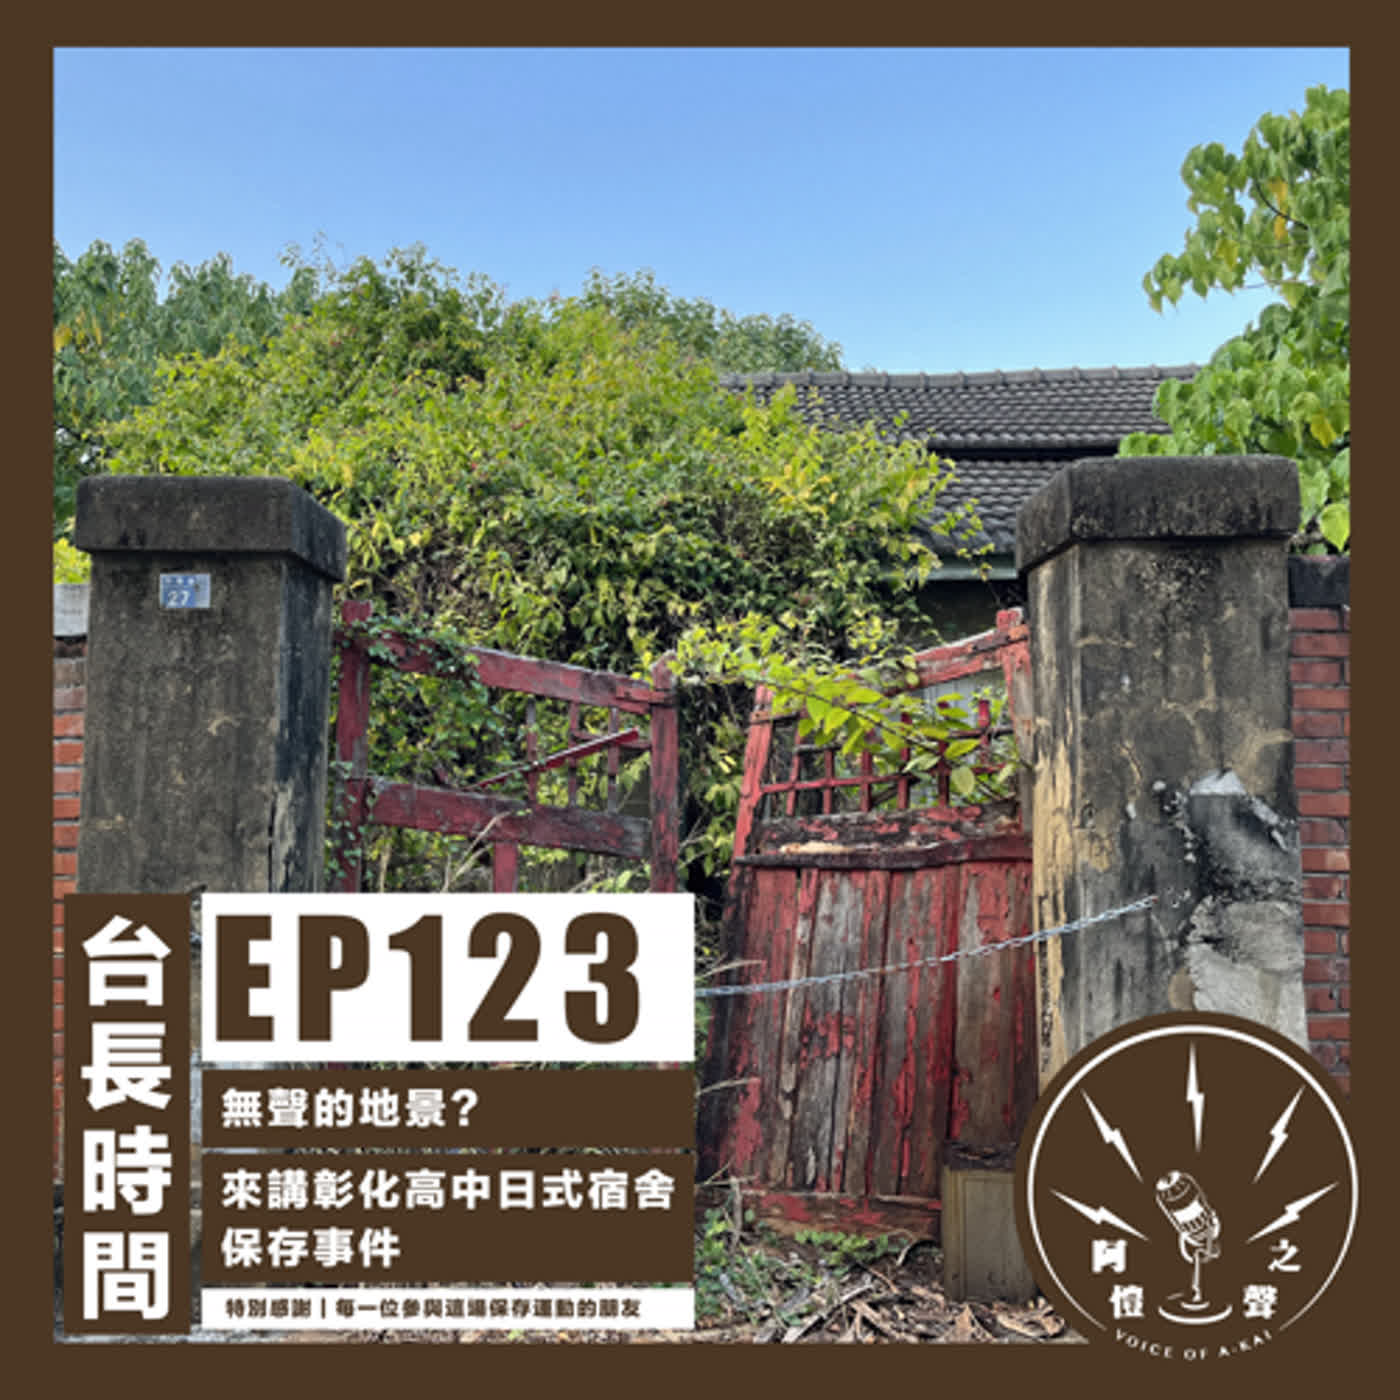 EP123 台長時間：無聲的地景？來講彰化高中日式宿舍保存事件